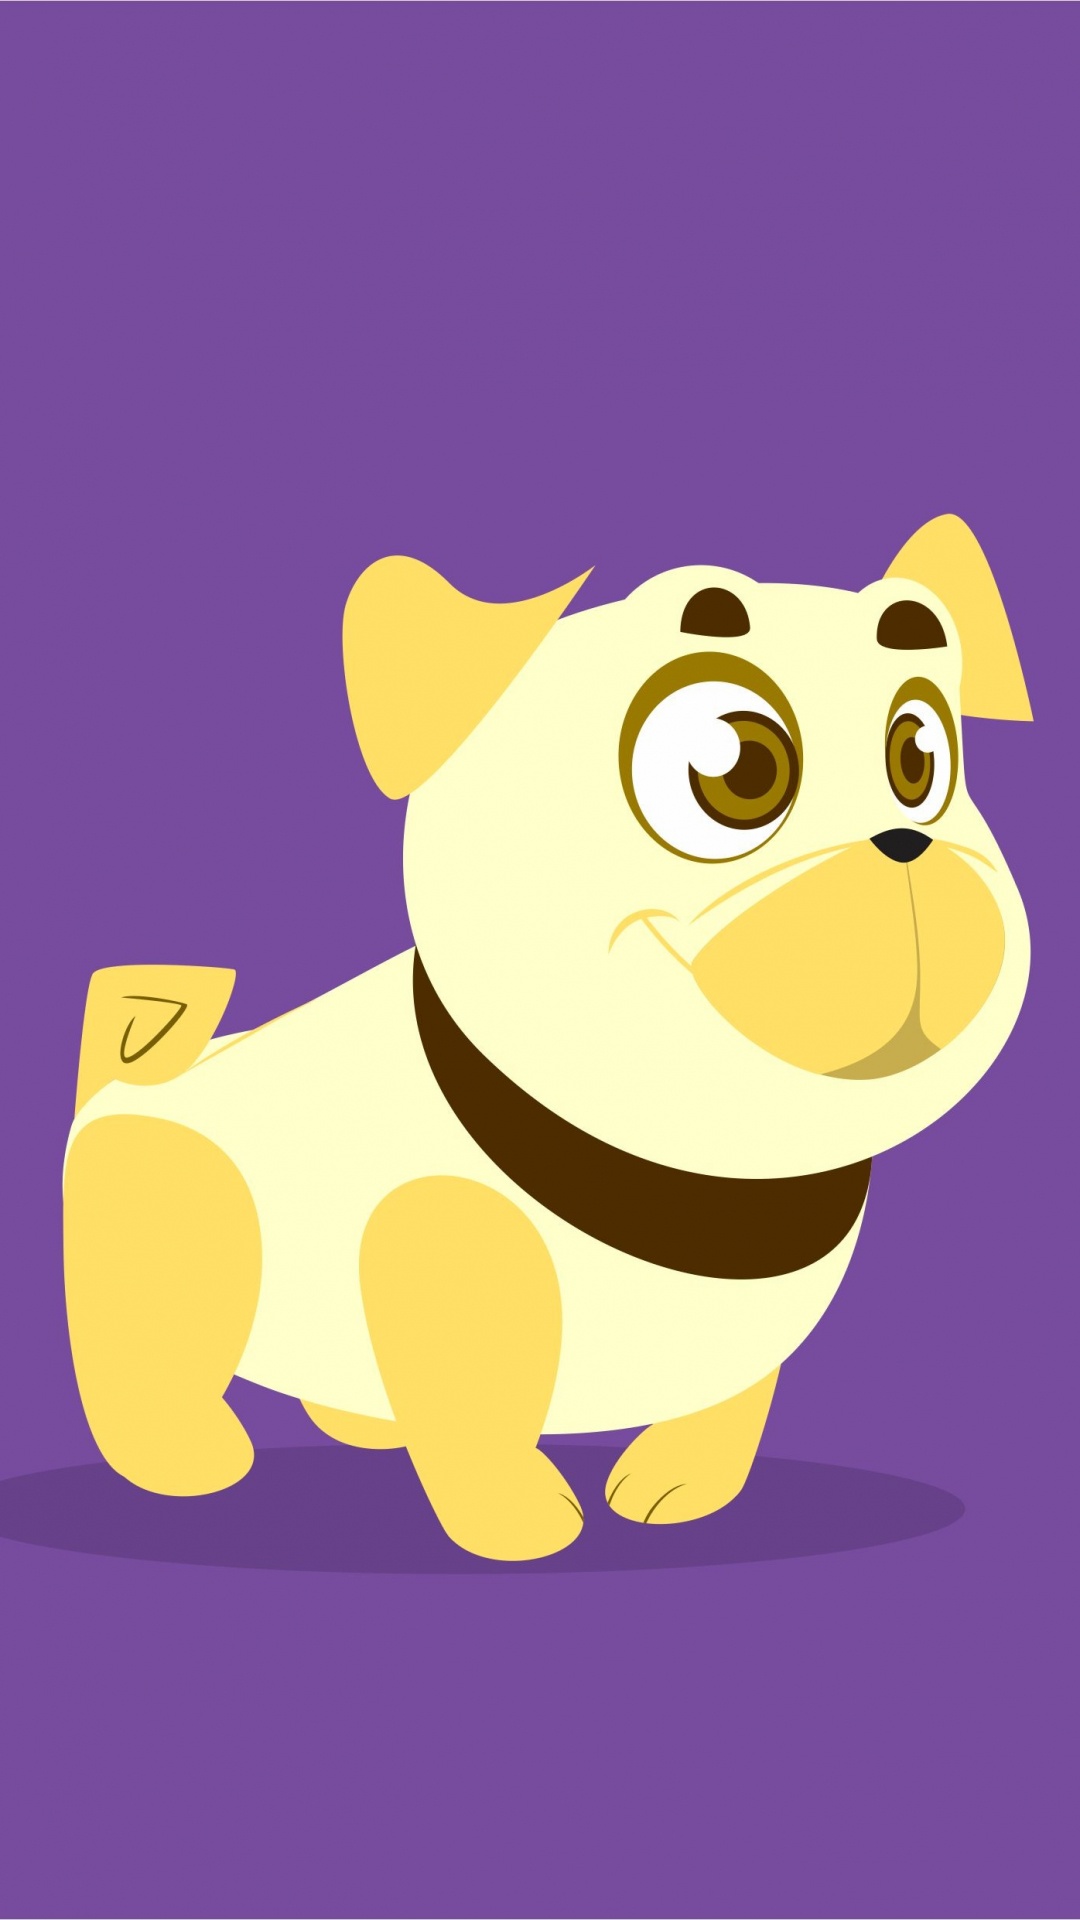 Personaje de Dibujos Animados de Perro Amarillo y Marrón. Wallpaper in 1080x1920 Resolution